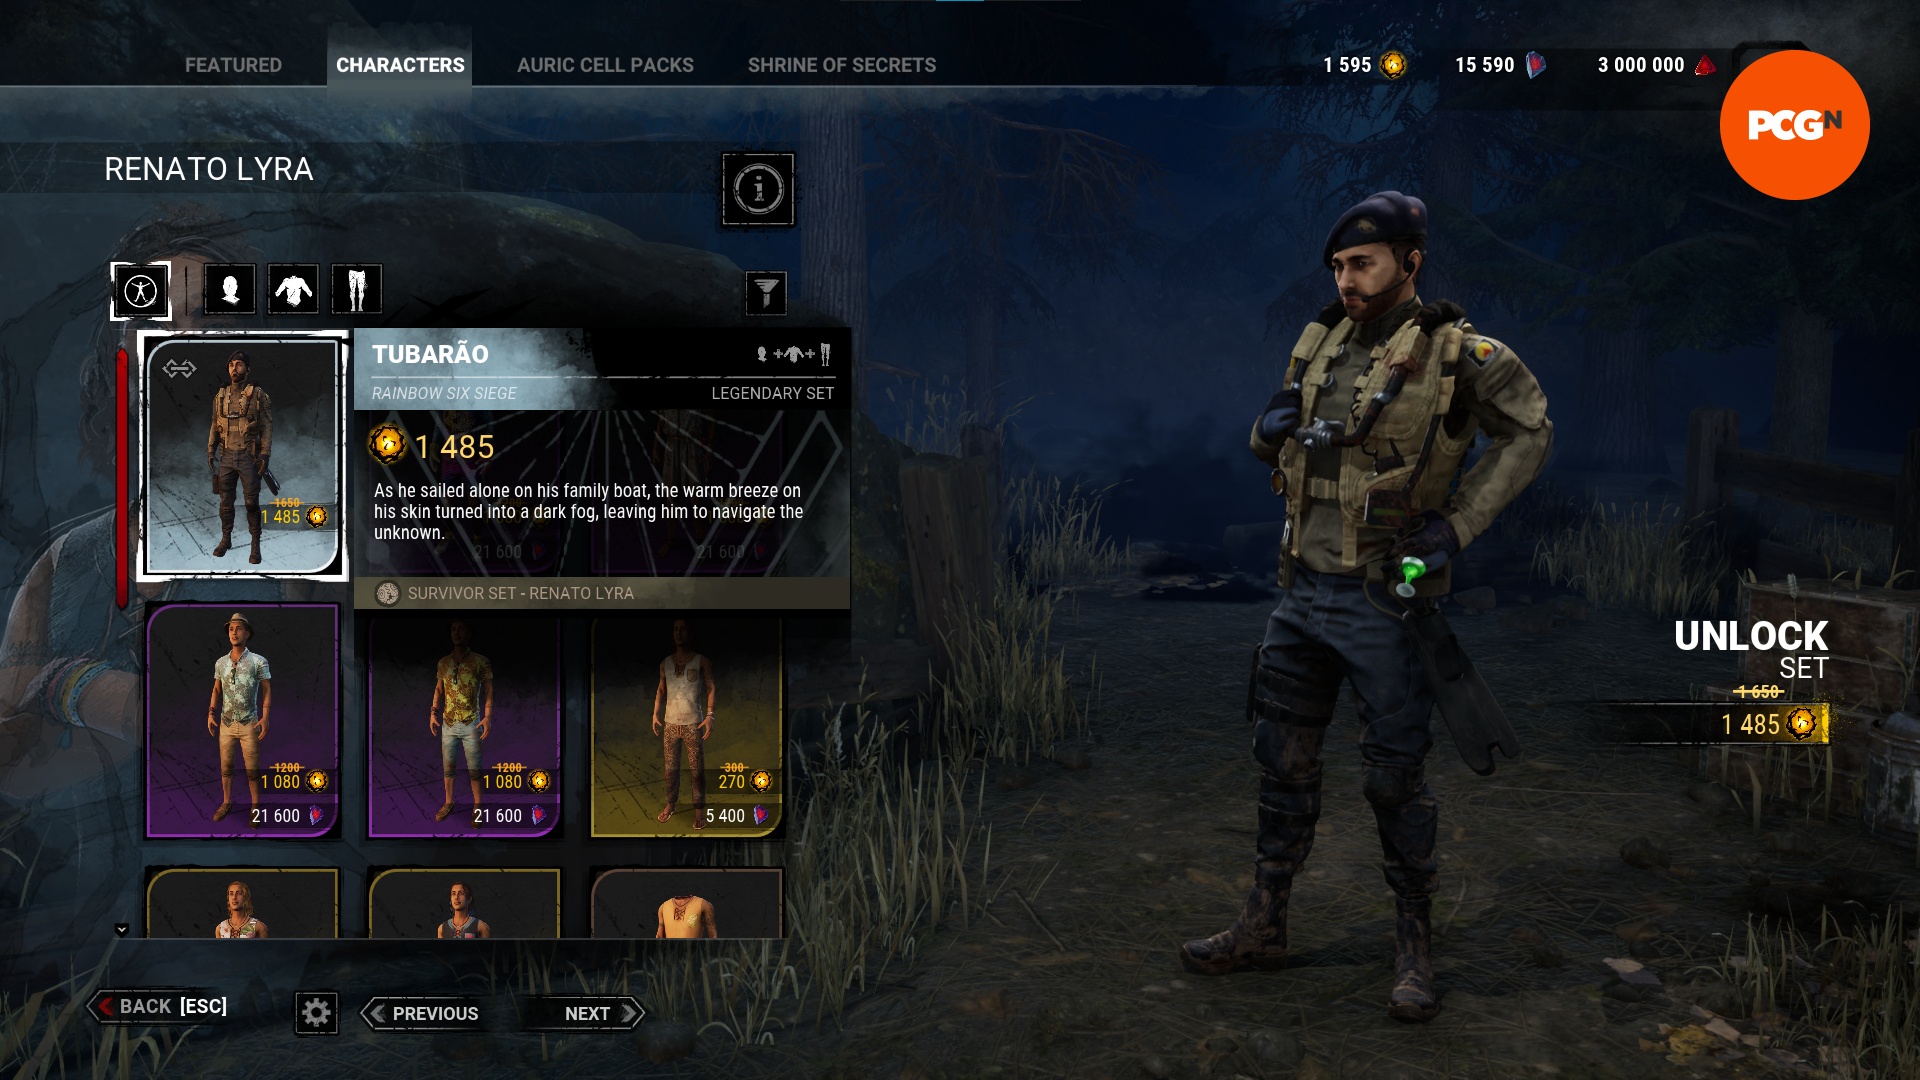 Screenshot von „Dead by Daylight“, der den Tubarão-Charakter im Spiel sowie die Shop-Details zeigt